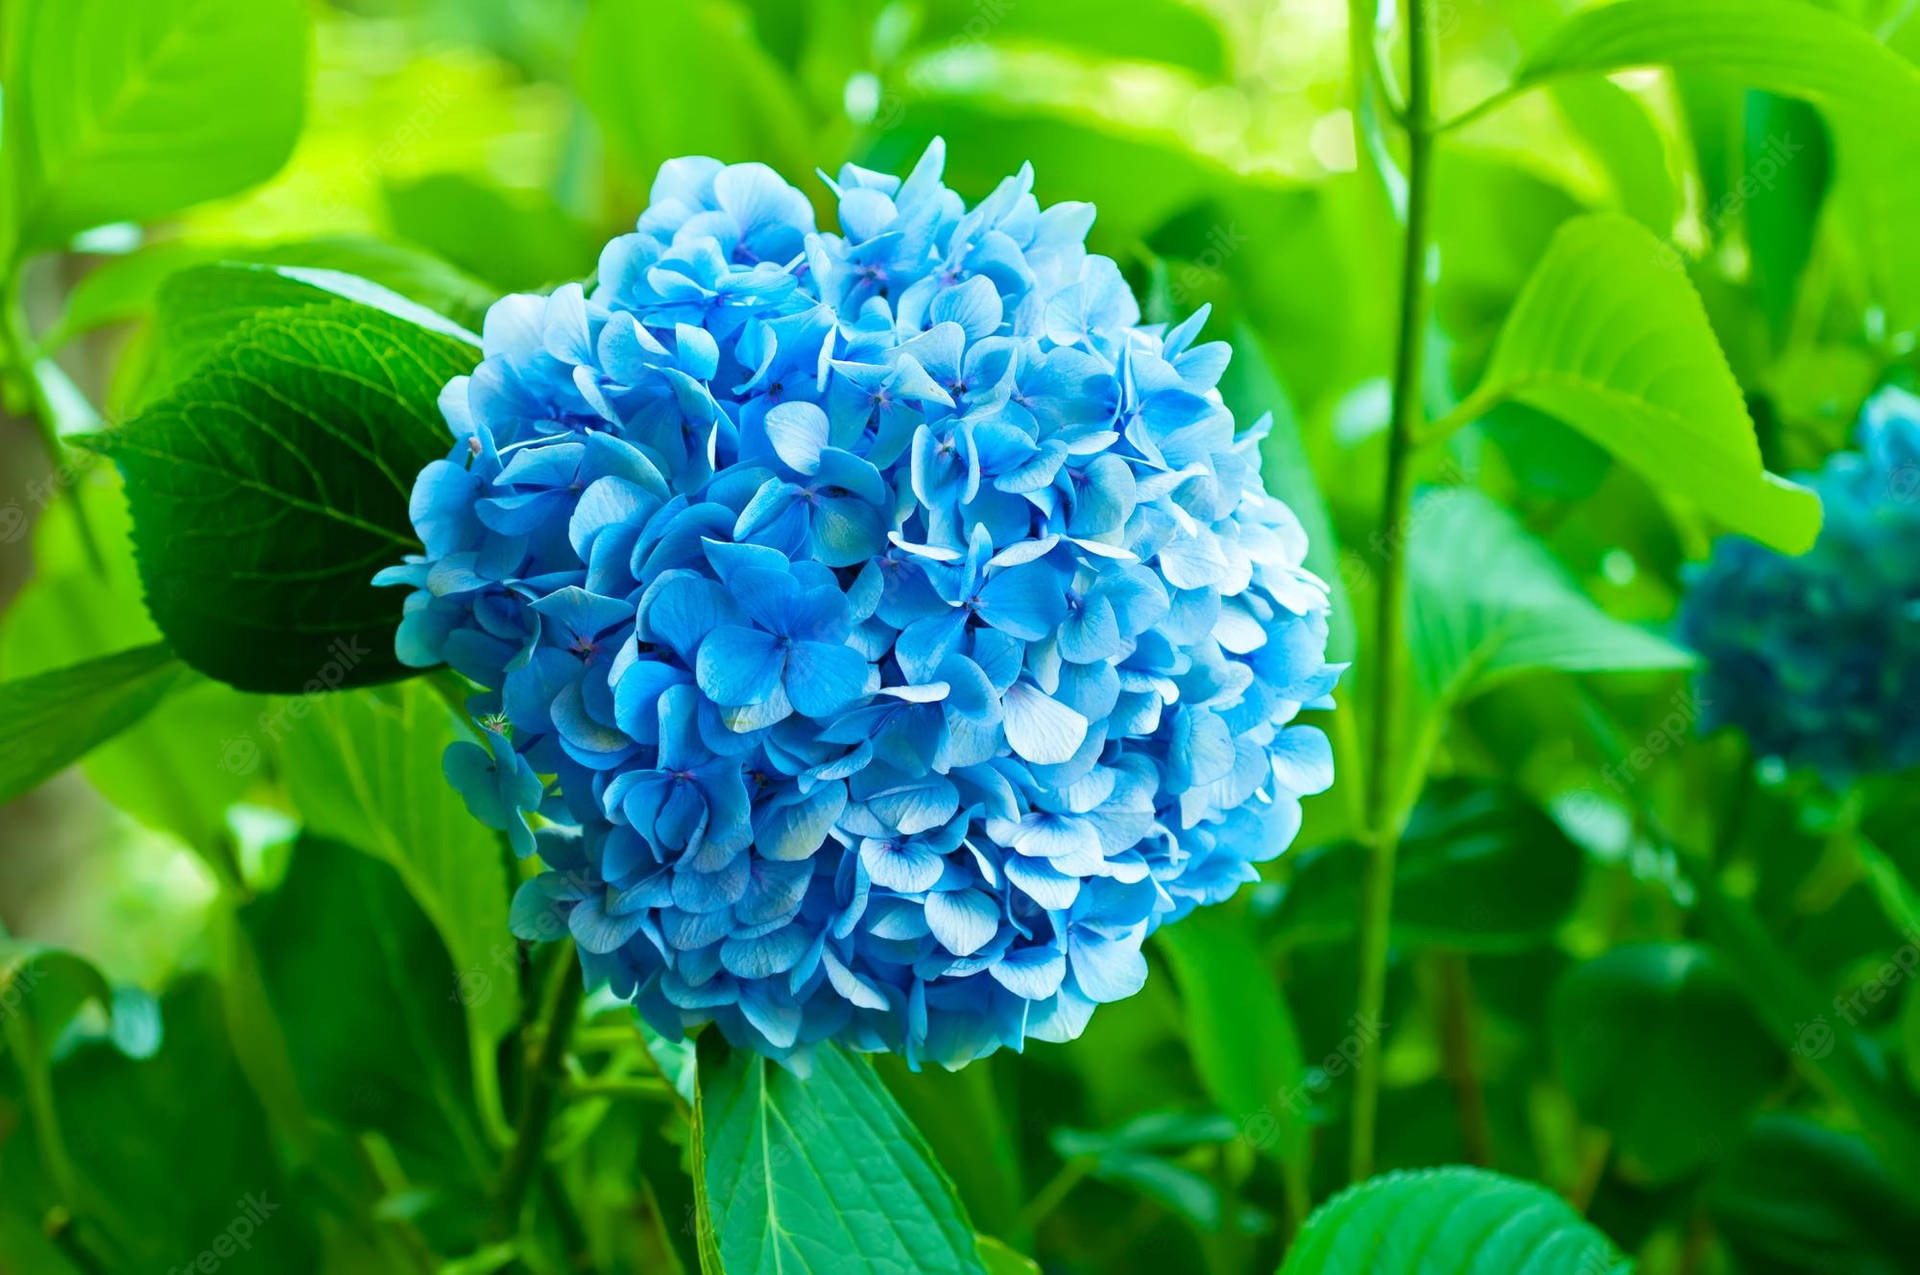 Blauehortensienblume Von Blättern Umgeben Wallpaper